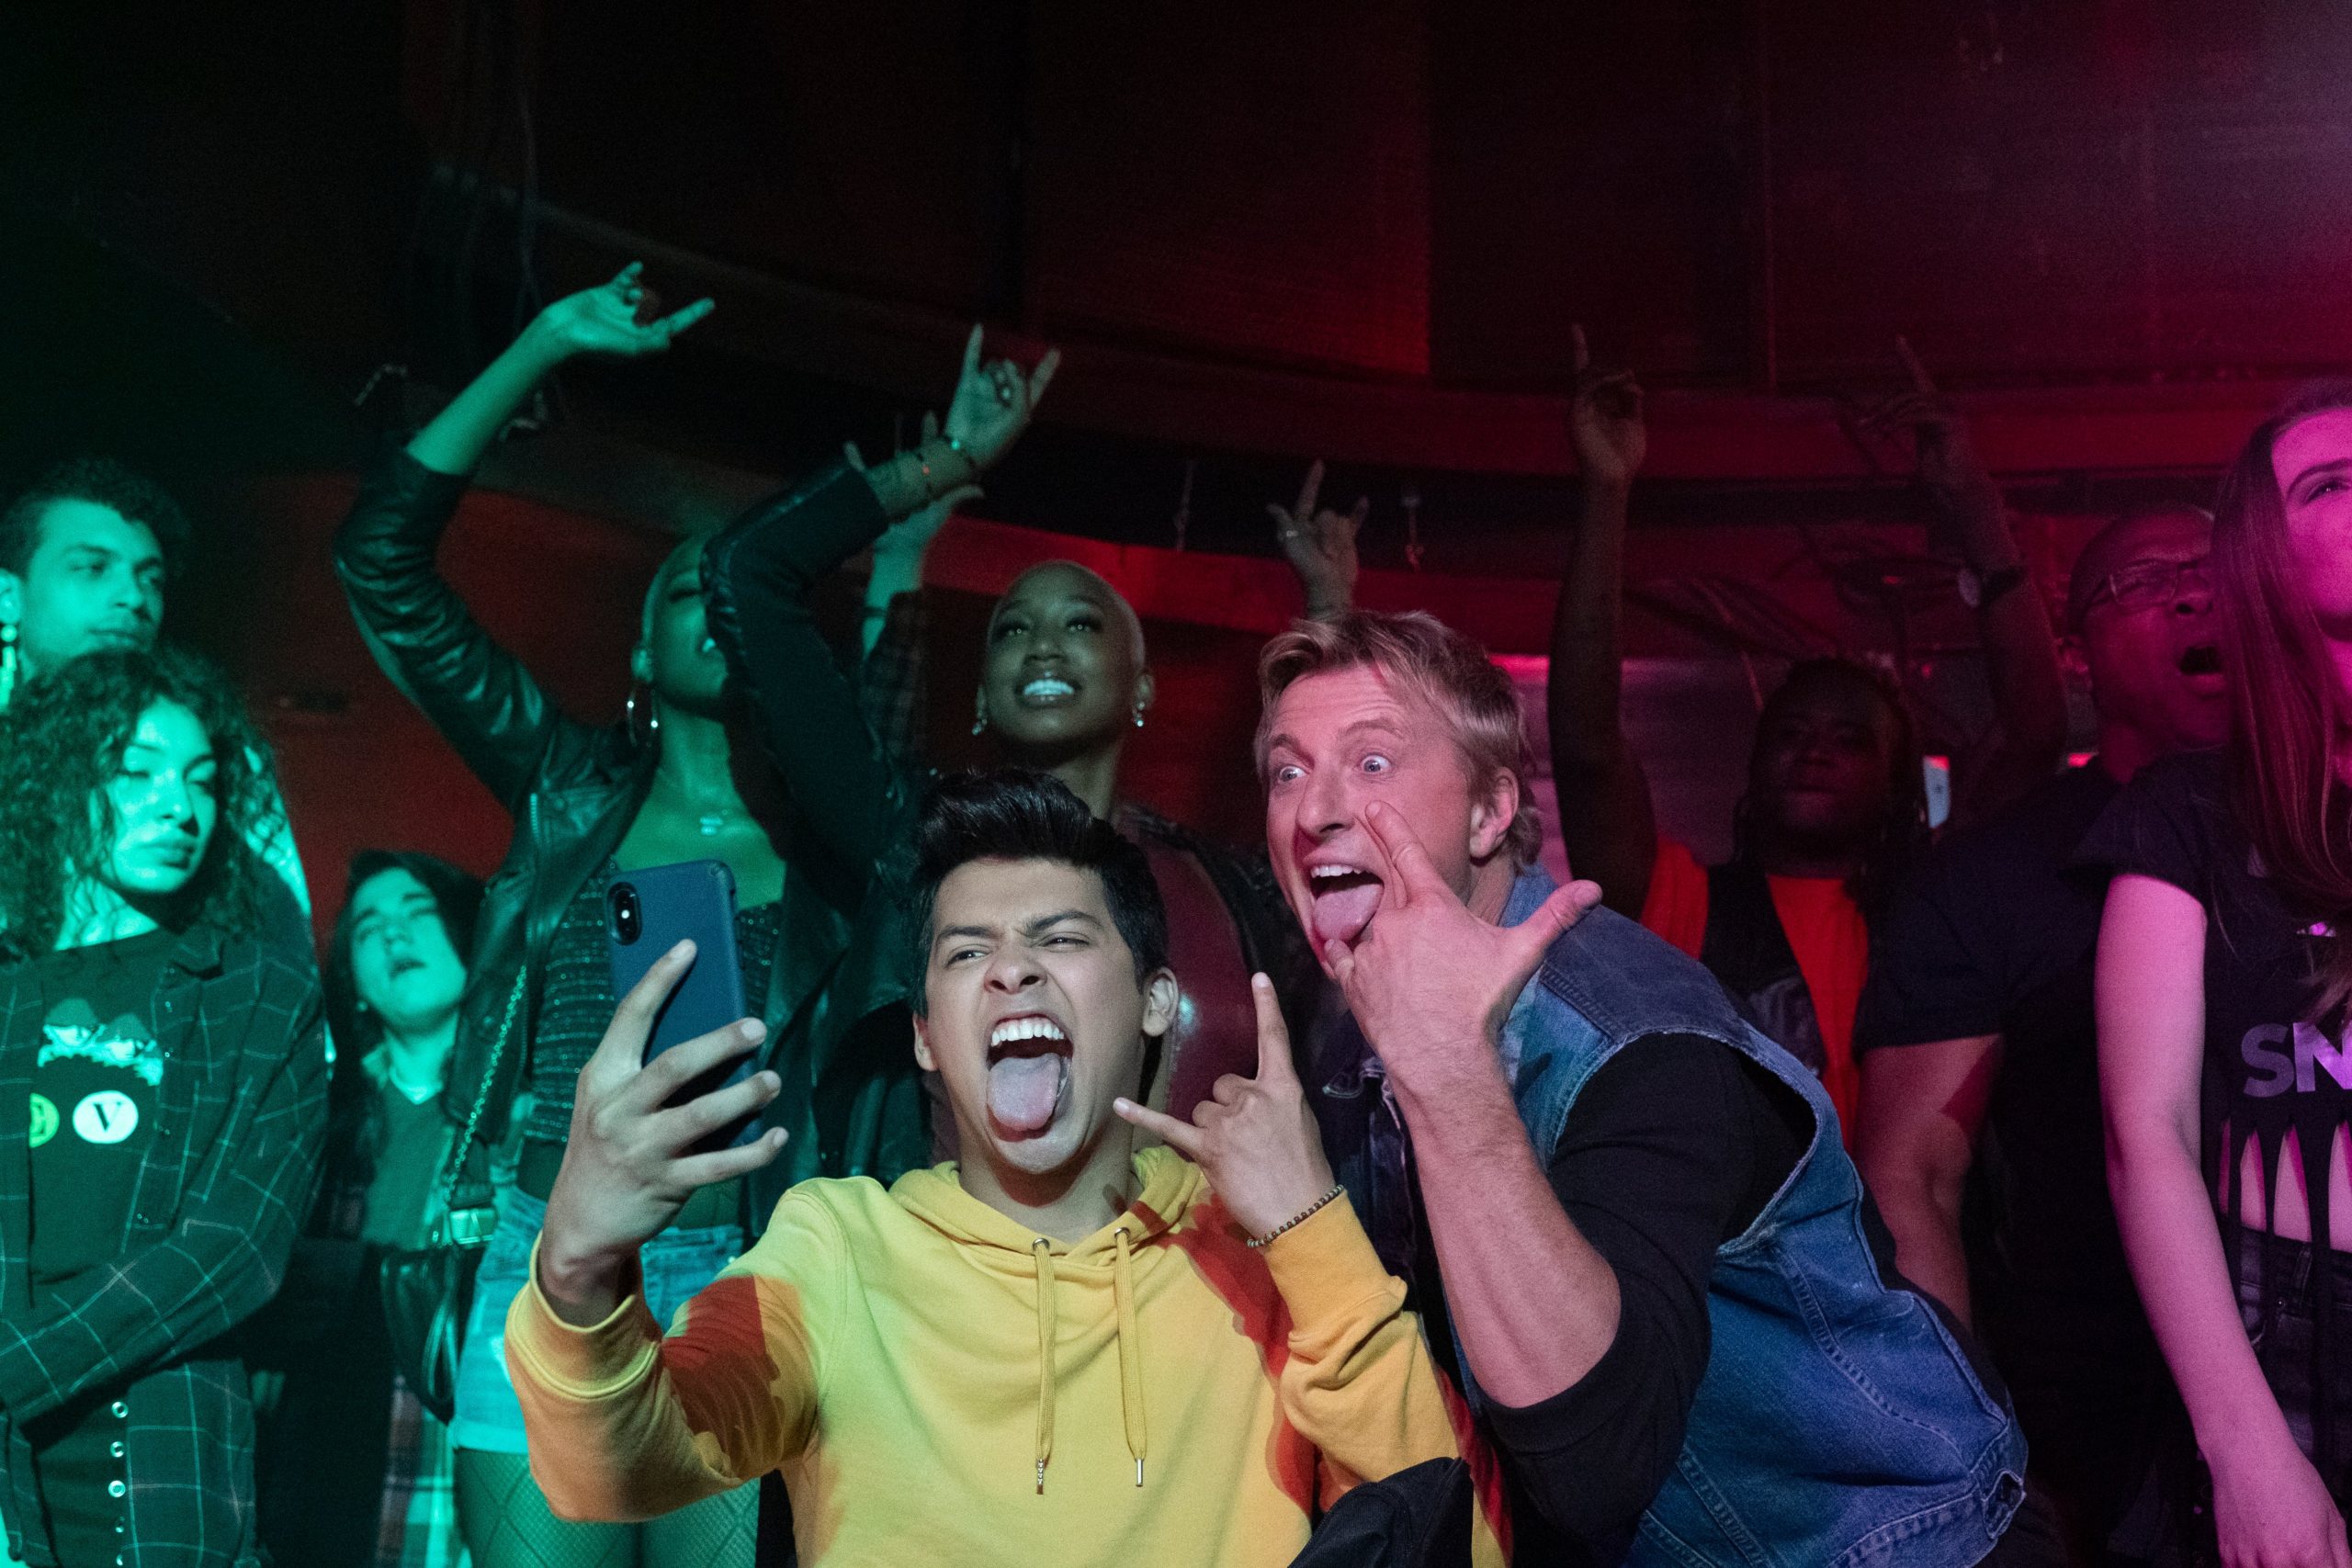 Dois amigos ao centro tirando uma selfie, fazendo sinal de rock n’ roll com as mãos e mostrando a língua. Ao fundo, um grupo de pessoas aproveitando um show de música 